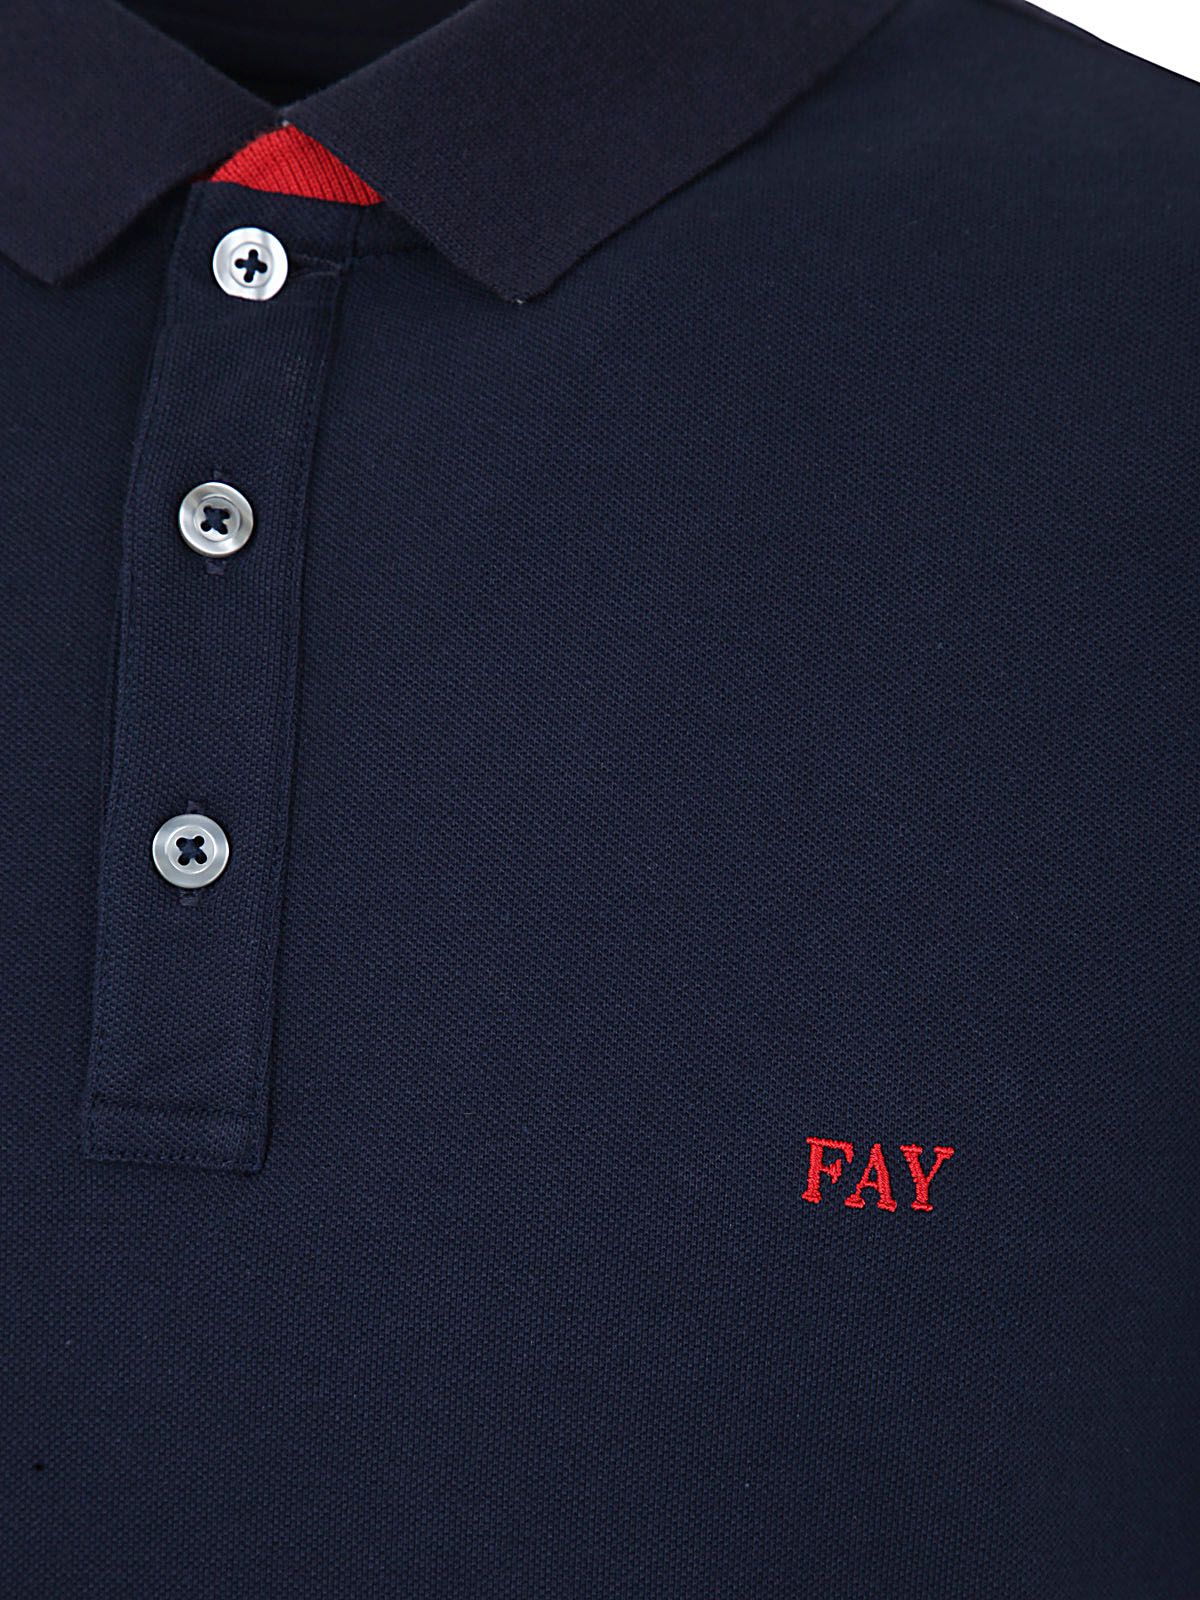 Shop Fay Men's Tshirt